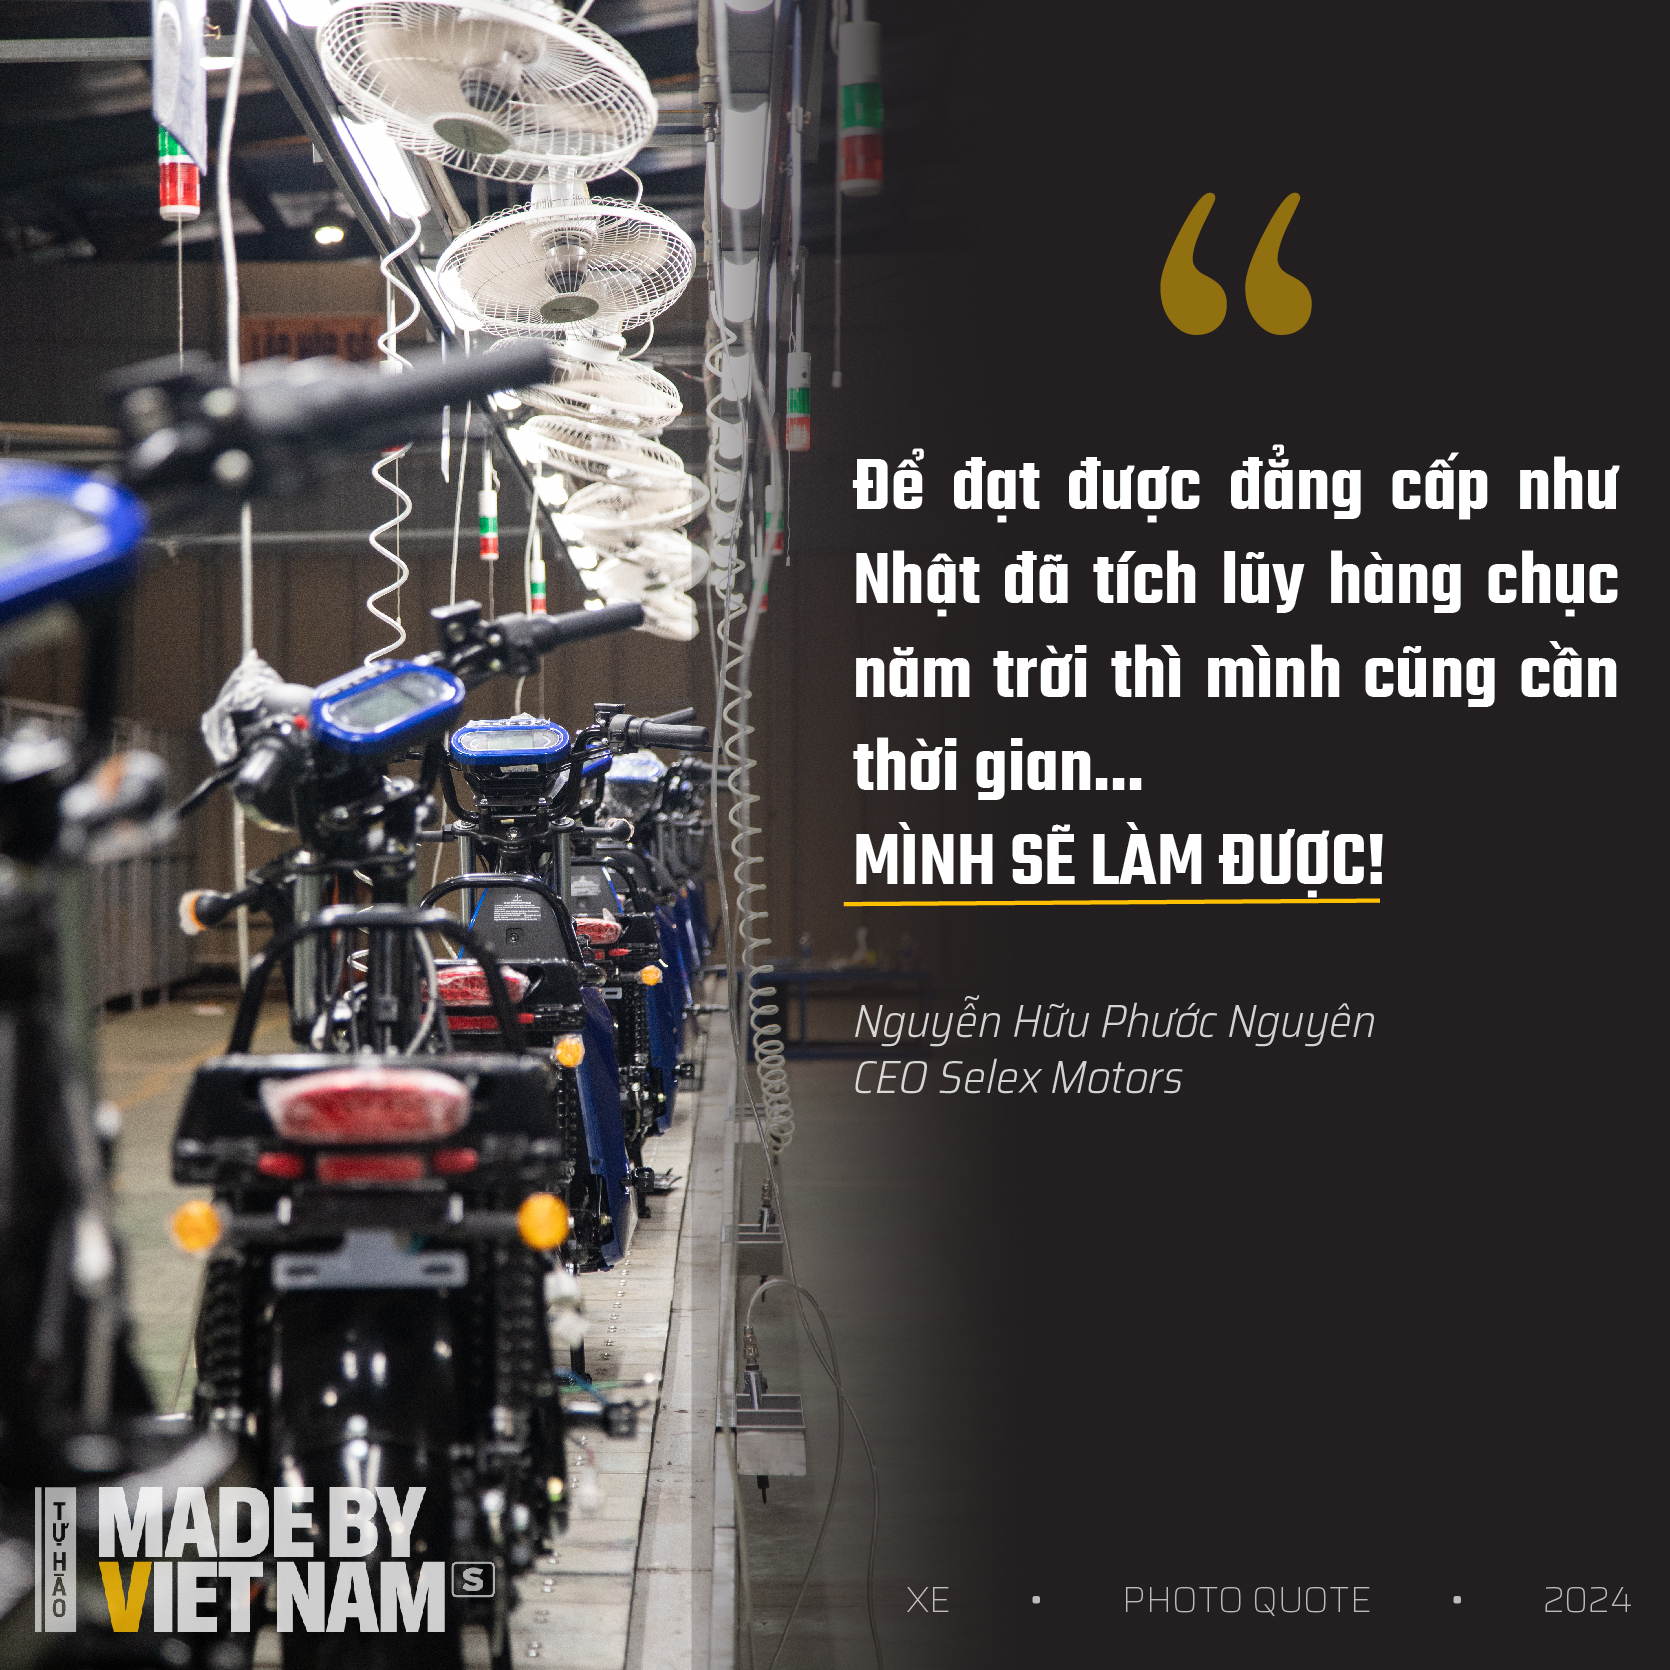 Mẫu xe máy Việt Nam làm chủ đến 80%: Mua chưa đầy một năm là đủ thu hồi vốn, thu nhập tăng 34%- Ảnh 10.